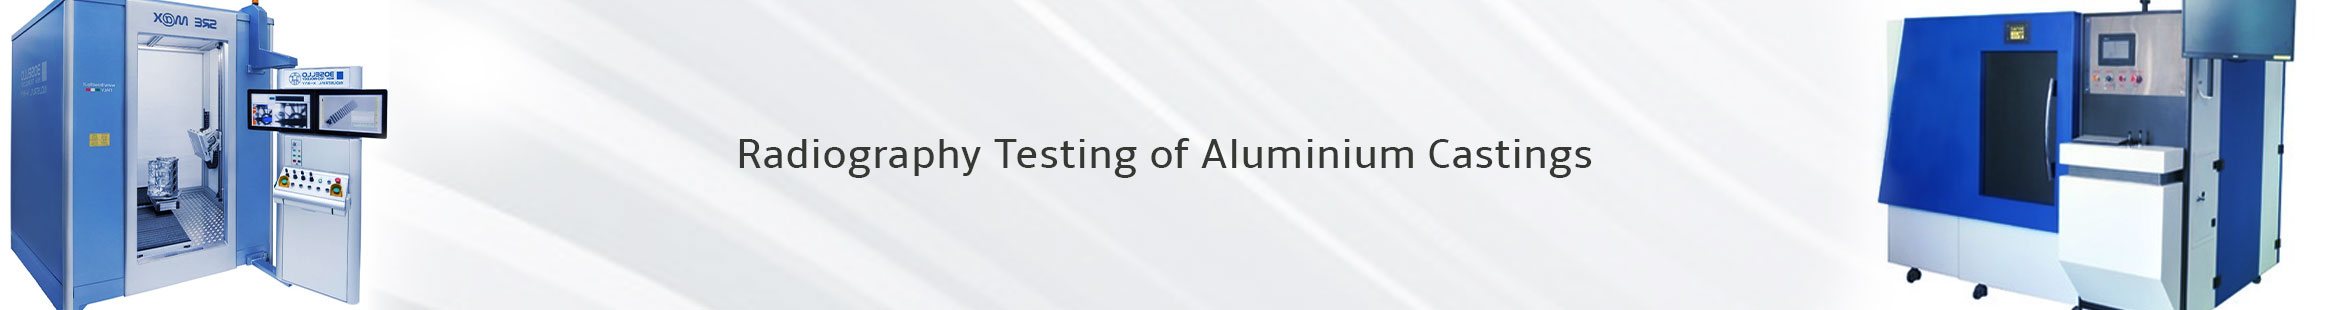 Radiographic Testing of Aluminum Casting | Aluminium  Casting Company